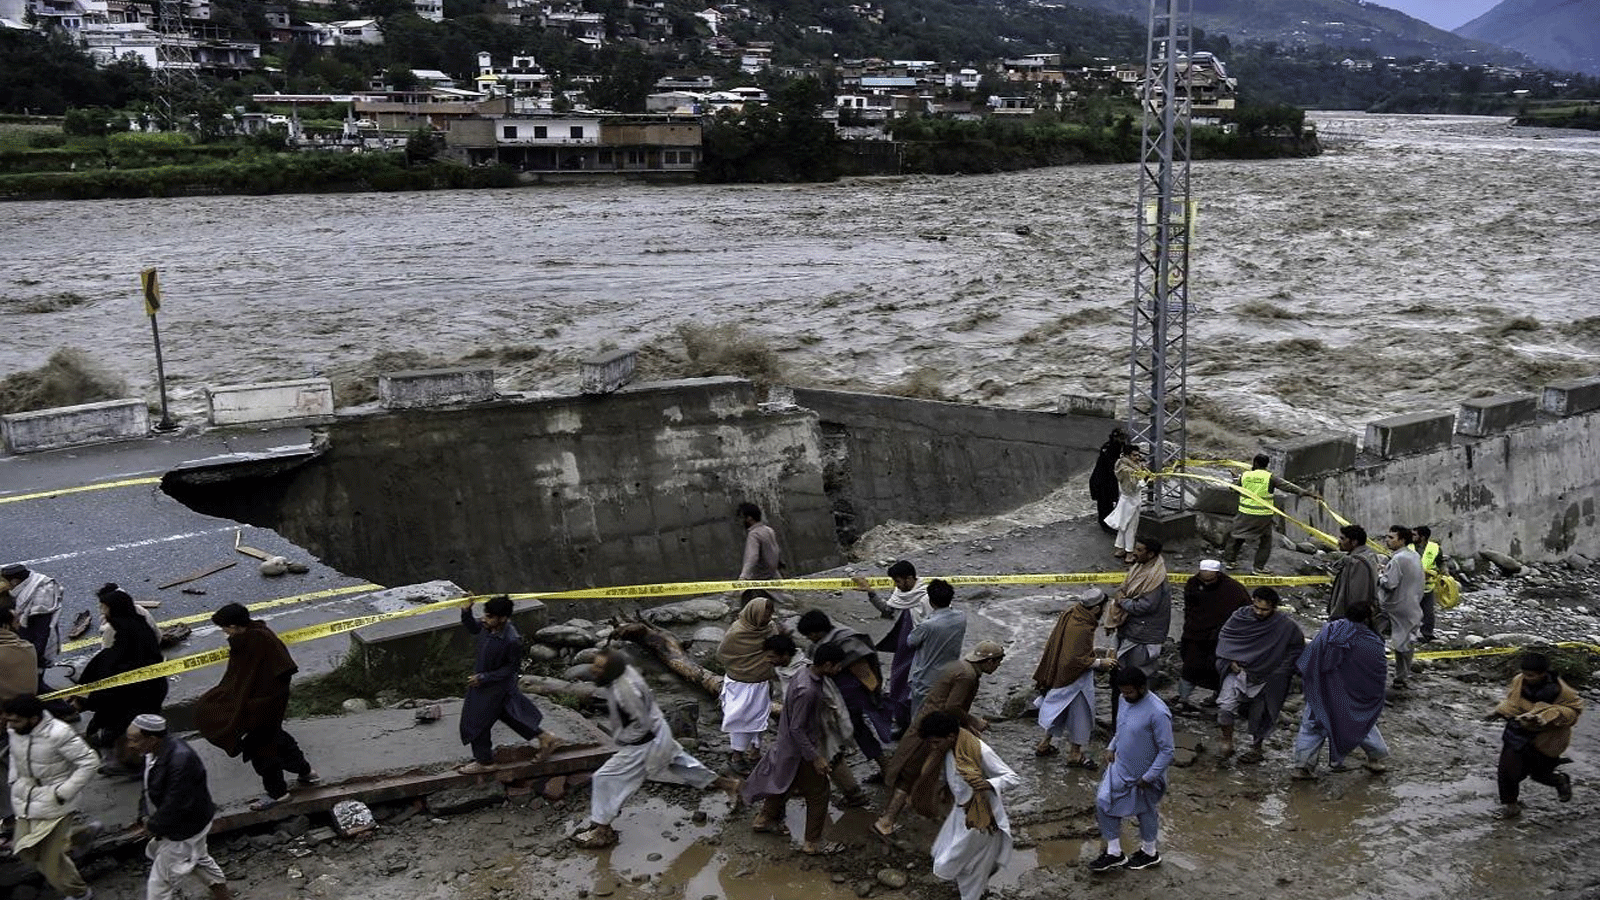 الناس يتجمعون أمام طريق تضررت بسبب مياه الفيضانات بعد هطول أمطار موسمية غزيرة في منطقة ماديان في وادي سوات شمال باكستان في 27 آب\أغسطس 2022